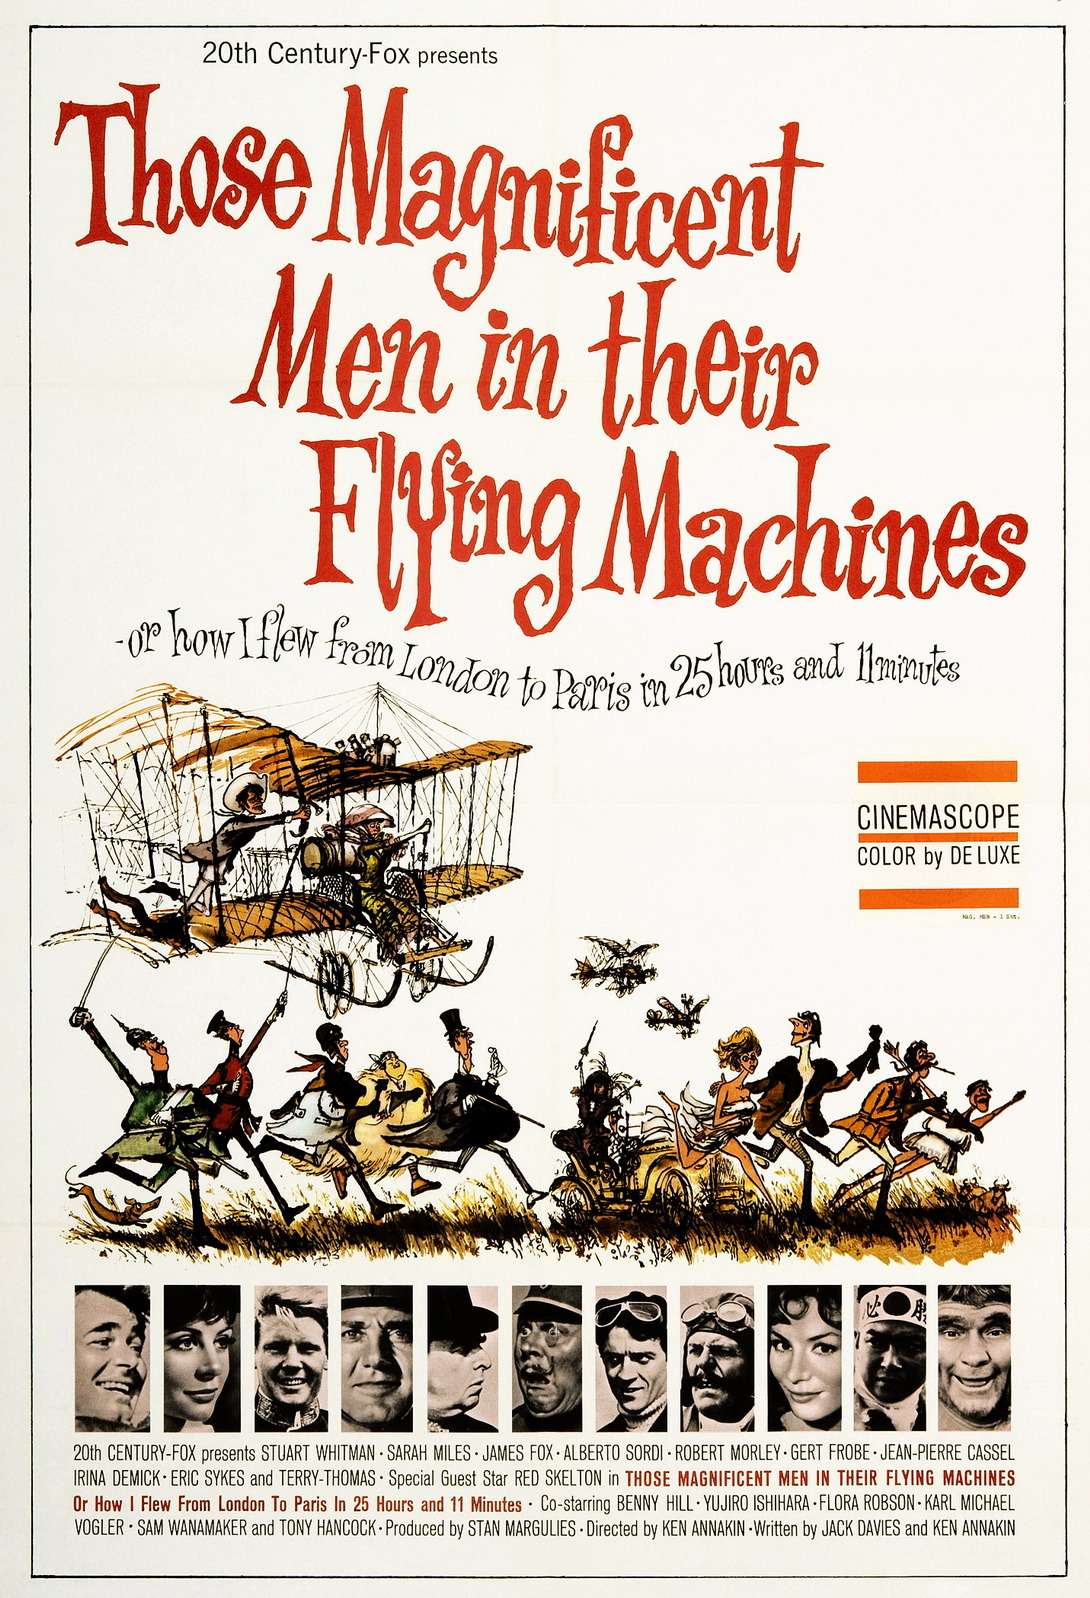 Автомобиль №60551 — один из символов Великобритании. В 1965 году его даже сняли в одном из эпизодов ретро-комедии Those Magnificent men in Their Flying Mashines, в нашем прокате известной как «Воздушные приключения». На снимке — постер кинокомпании 20th Century-Fox